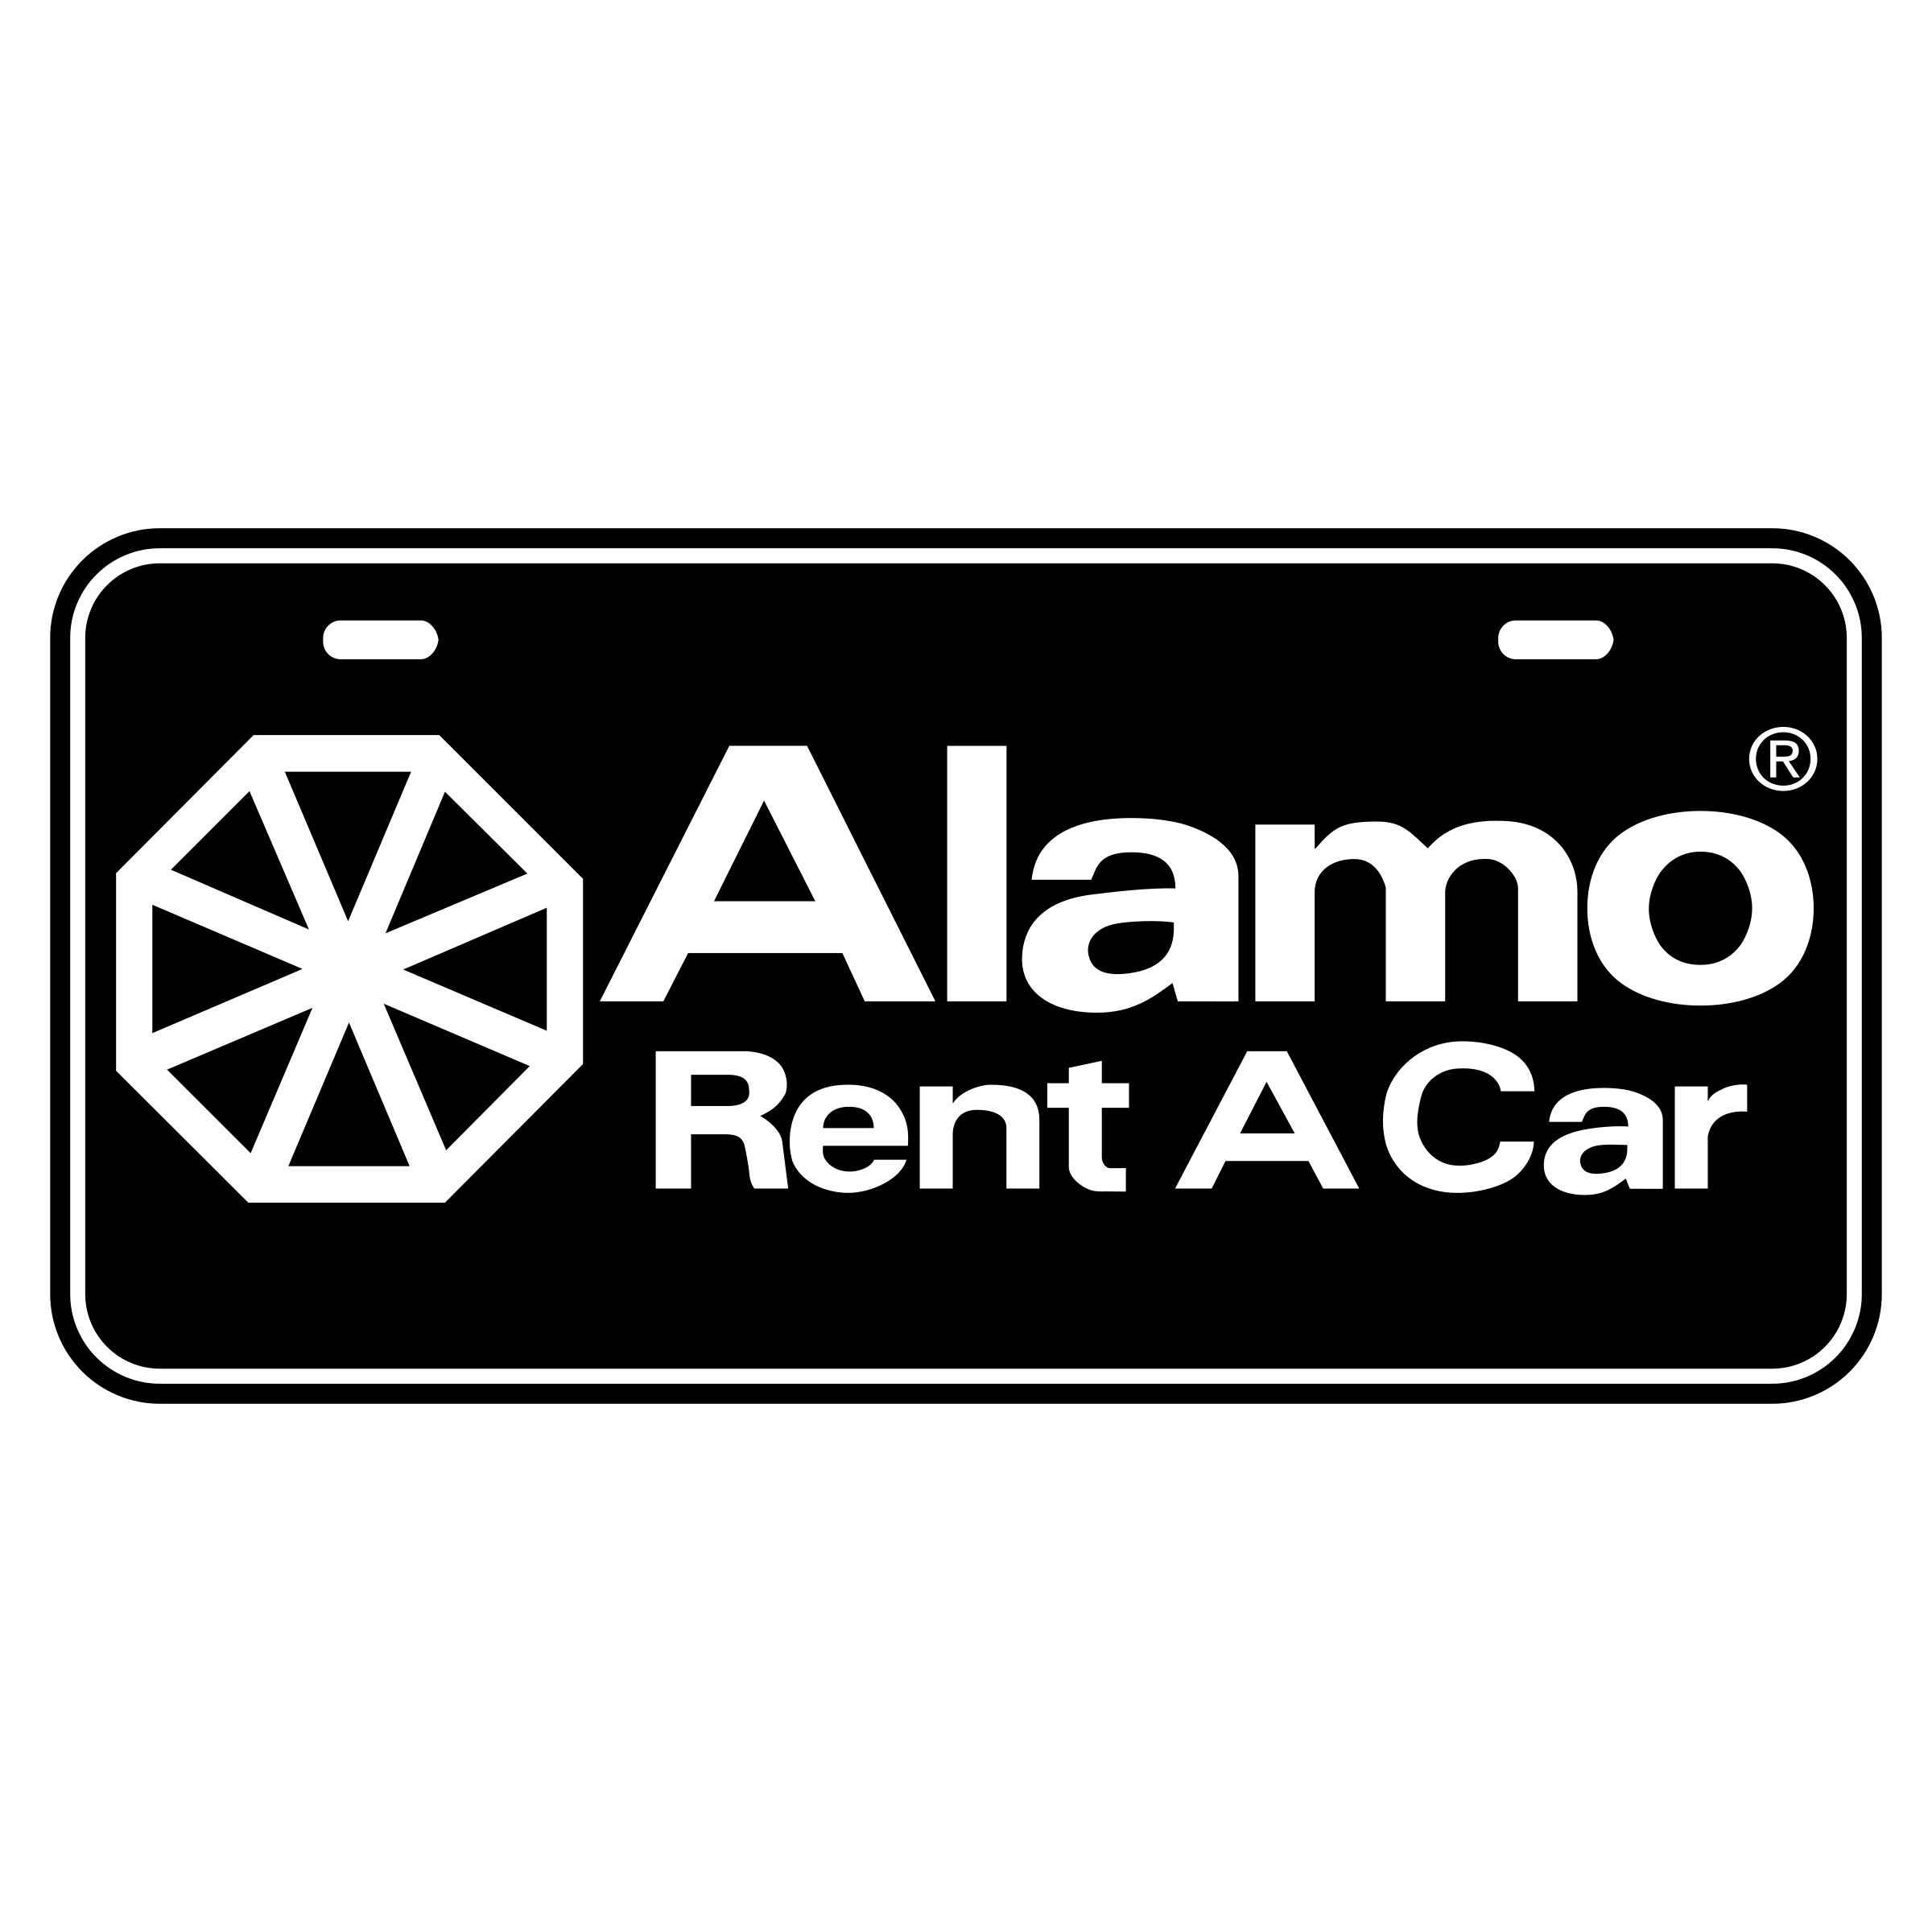 Alamo Logo - Alamo Logo PNG Transparent & SVG Vector - Freebie Supply